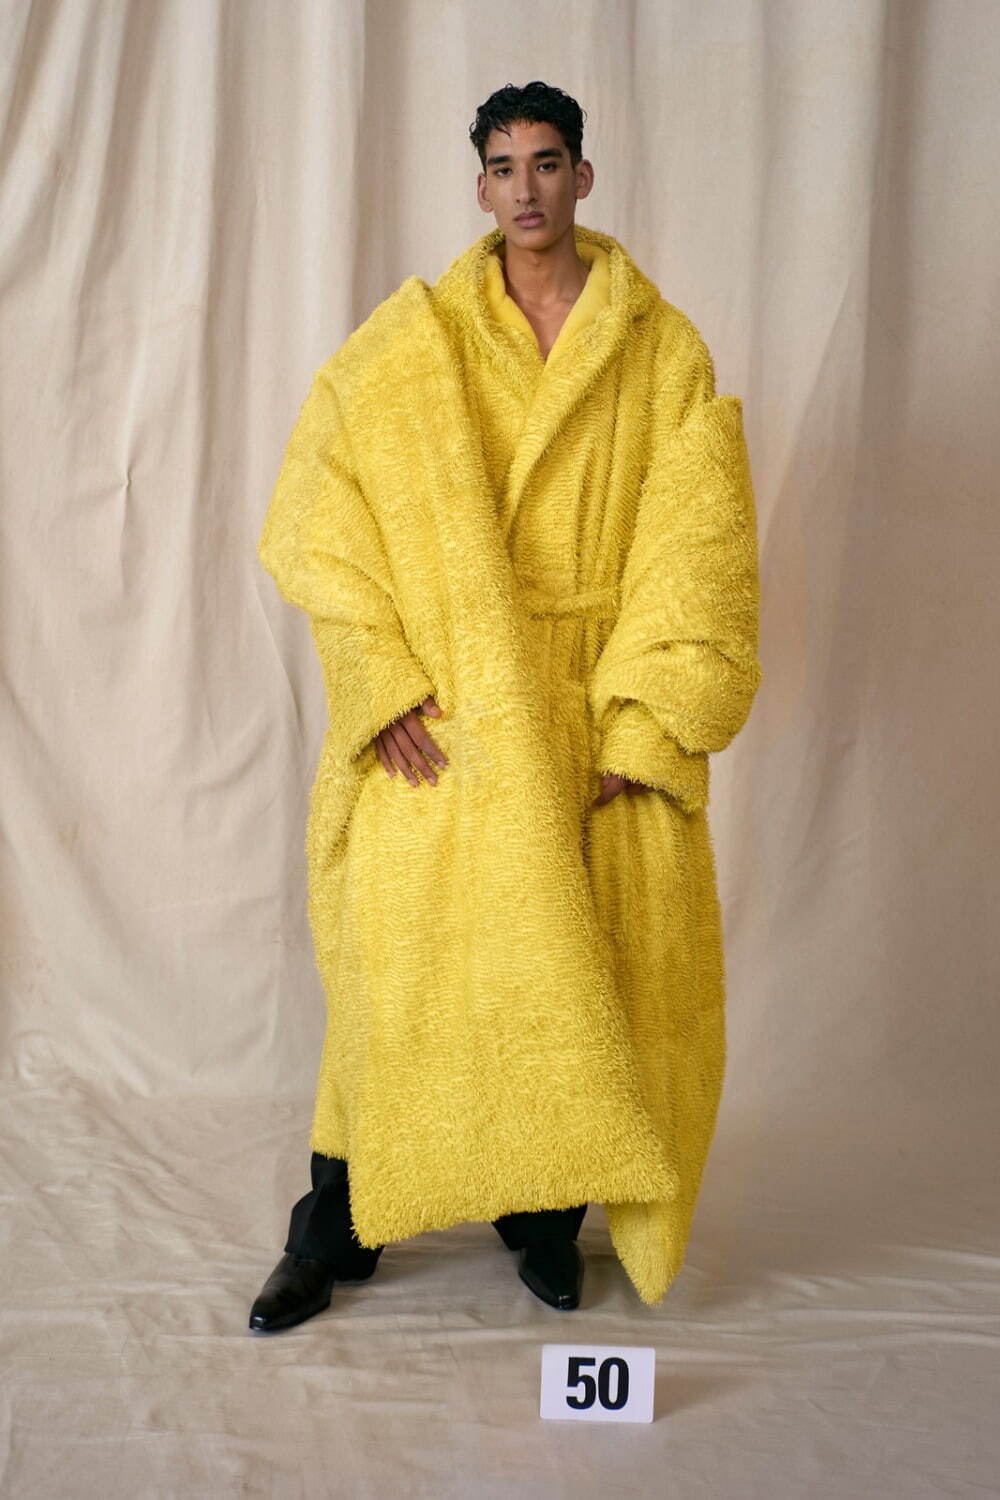 バレンシアガ クチュール(BALENCIAGA Couture ) 2021年冬ウィメンズ&メンズコレクション  - 写真50